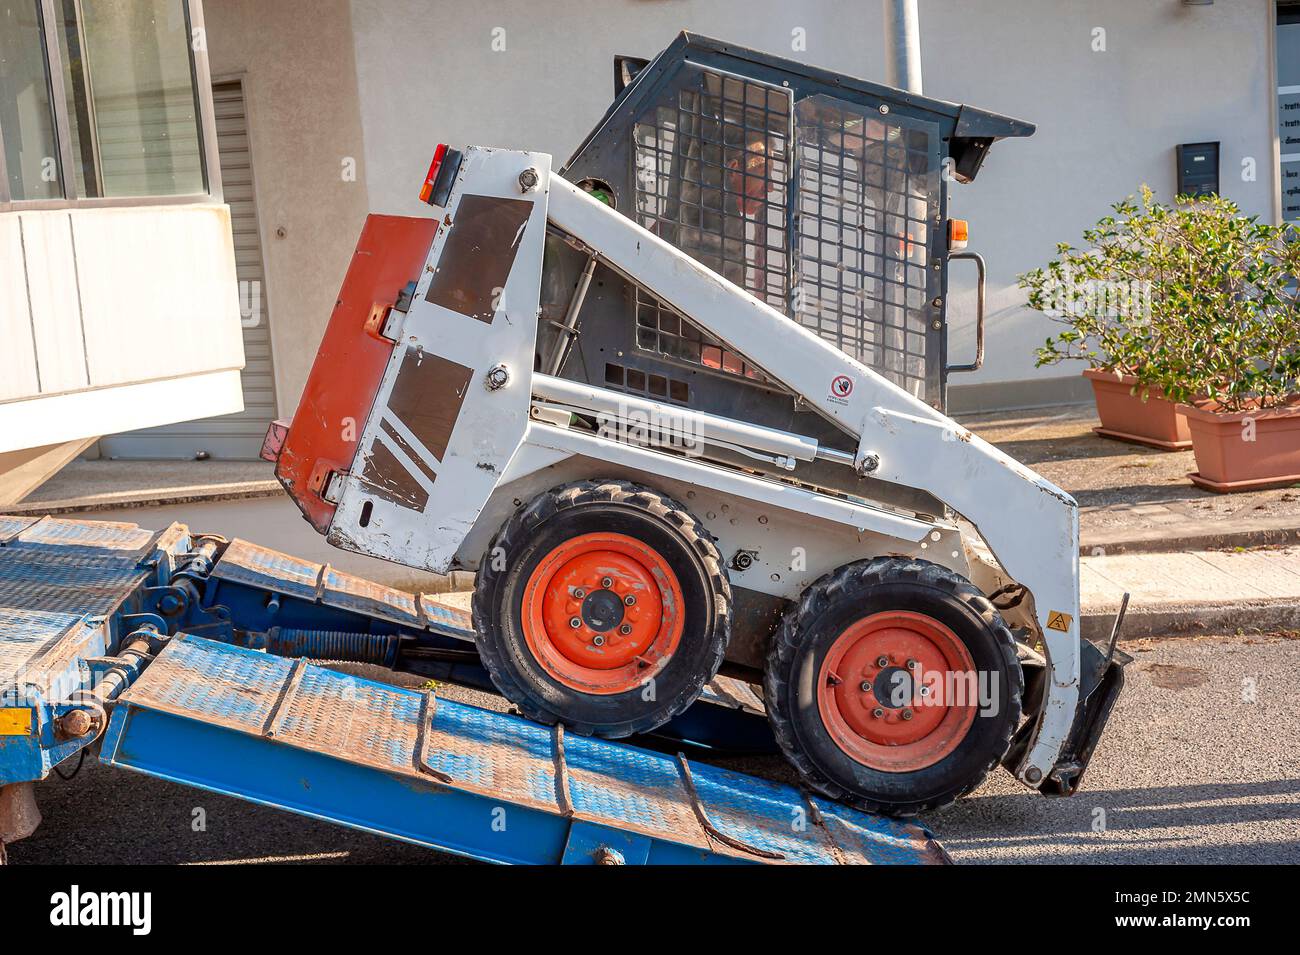 mini-excavatrice transportée sur le camion, au moyen de rampes, elle est déchargée par un opérateur Banque D'Images